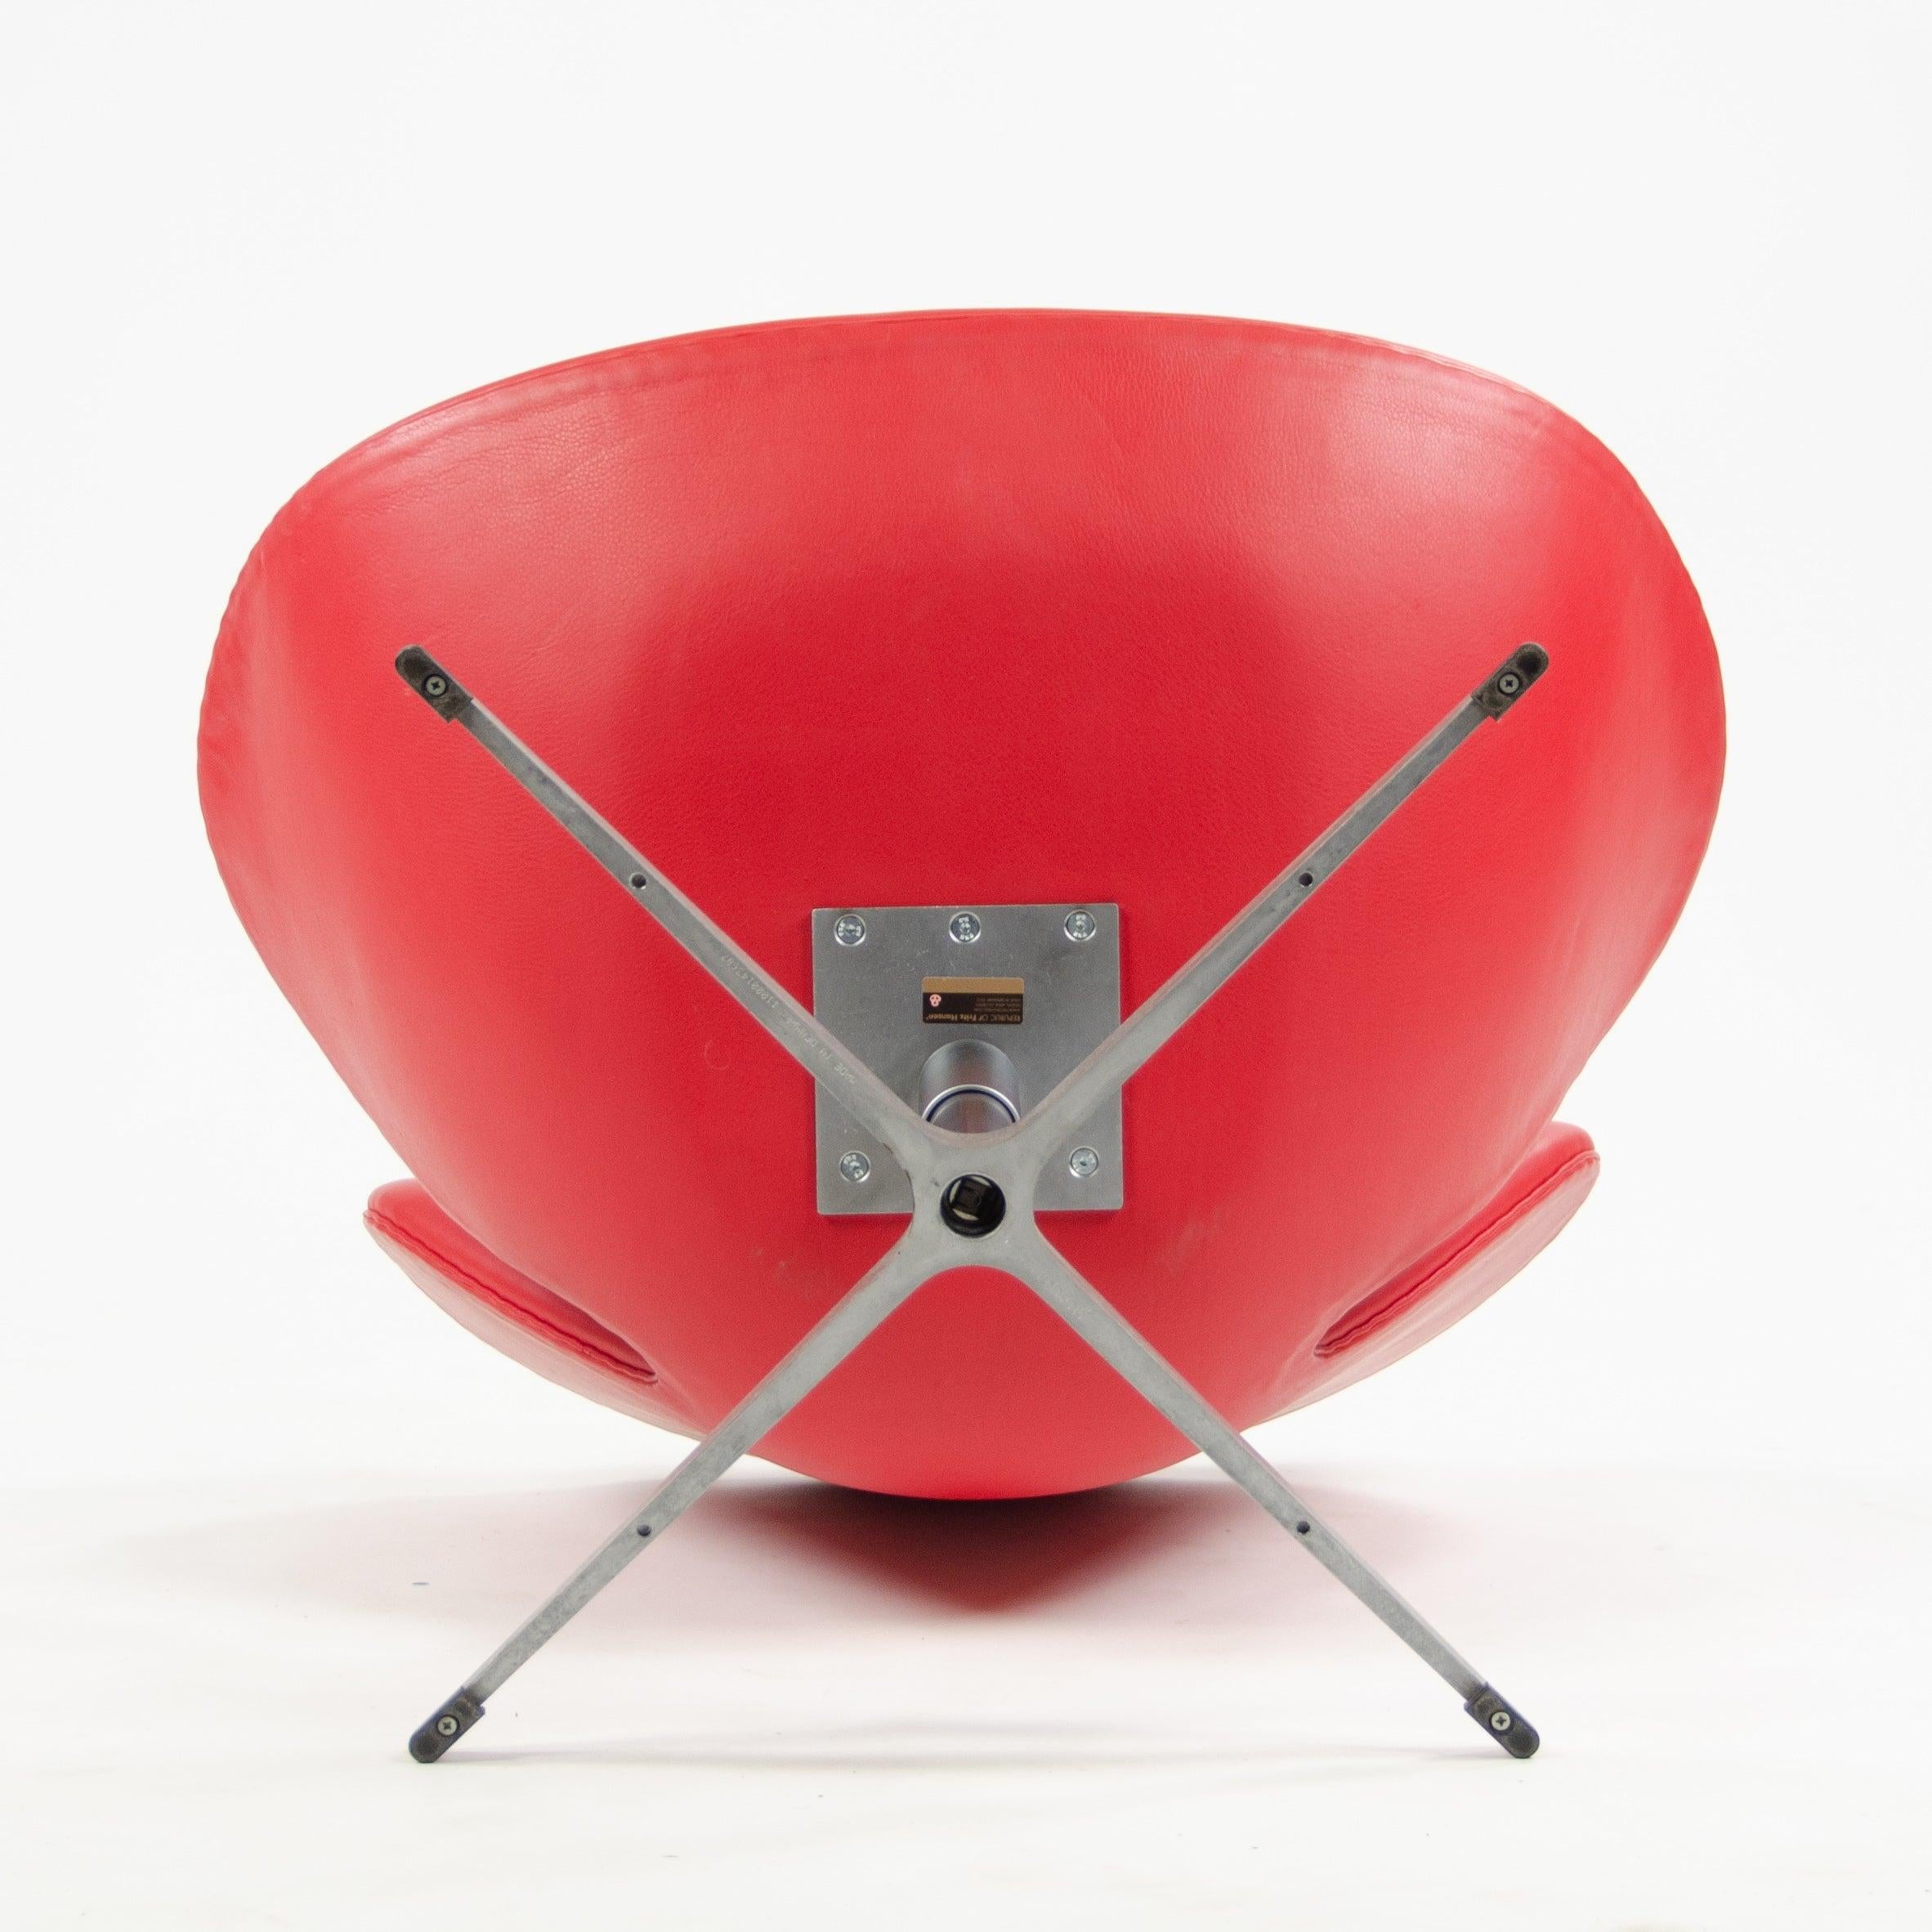 2012 Arne Jacobsen Fritz Hansen Denmark Swan Chairs Leather Upholstery Knoll For Sale 1